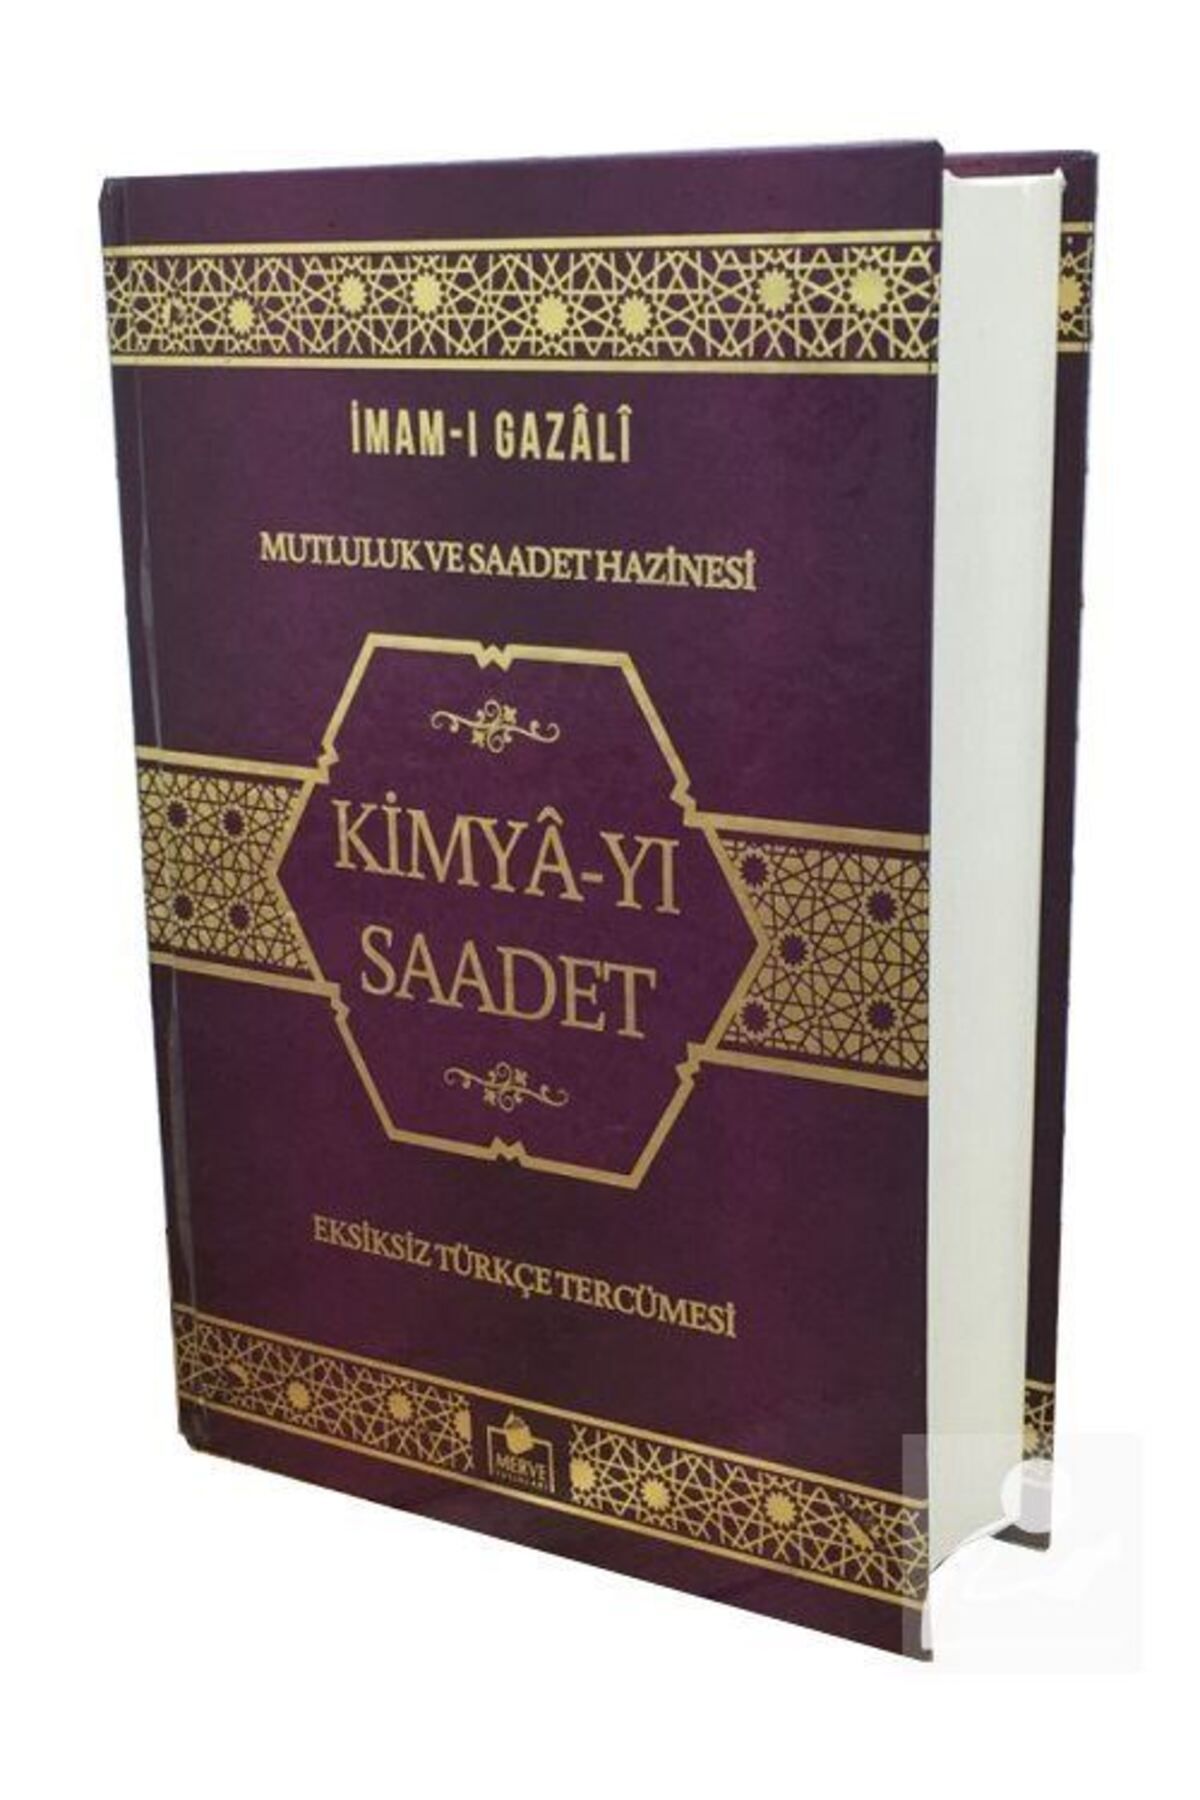 Merve Yayınları Kimya-yı Saadet Tam Metin Türkçe Tercümesi (CİLTLİ İTHAL KAĞIT) & Mutluluk Ve Saadet Hazinesi